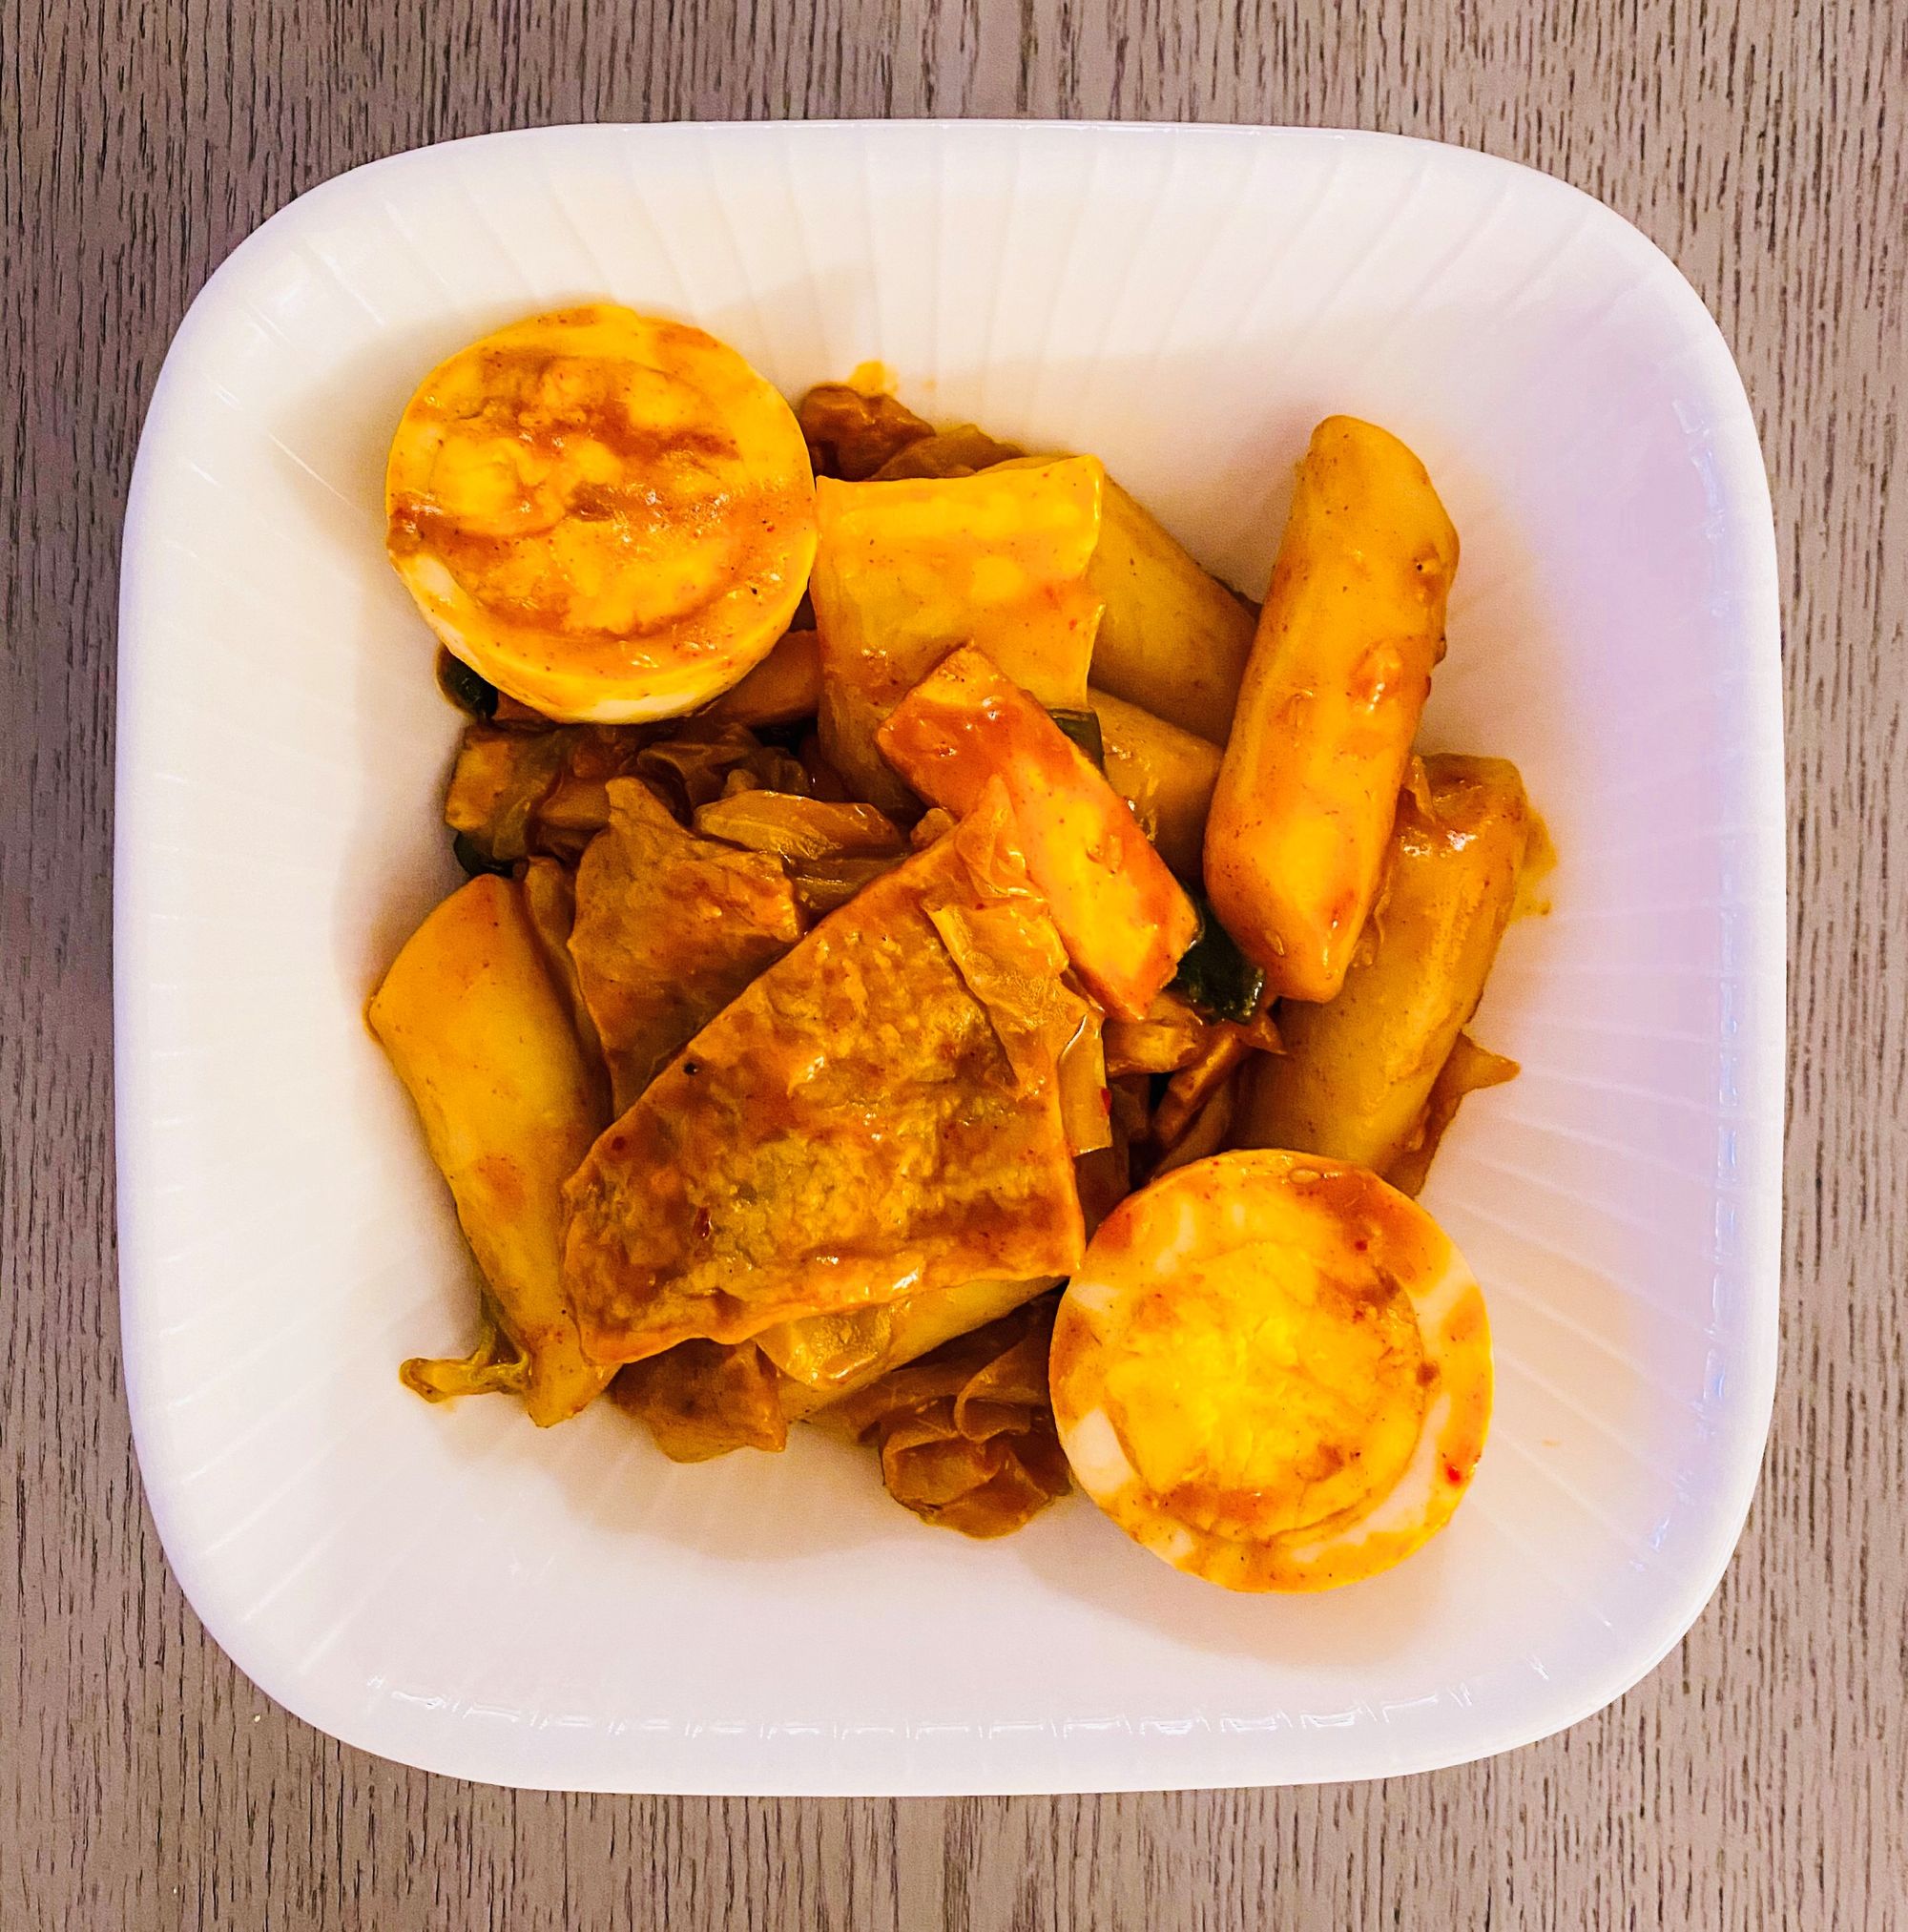 Tteokbokki Recipe (Spicy Stir-Fried Rice Cakes)